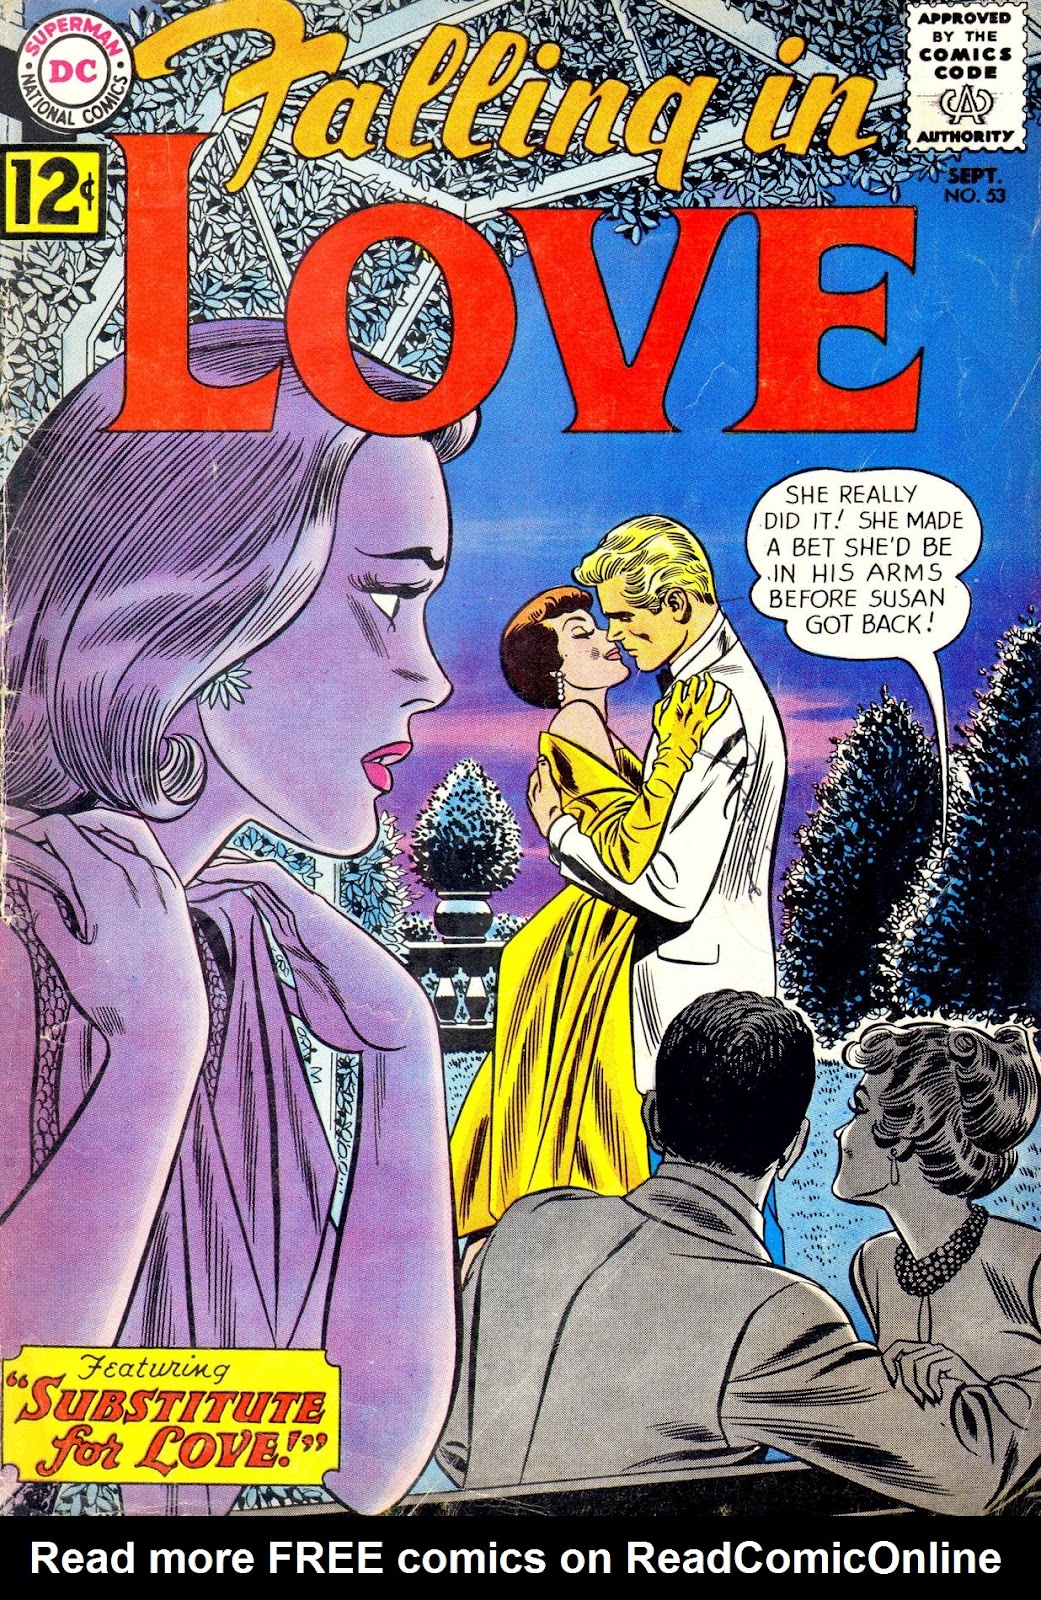 Issue love. 1962 Комиксы.